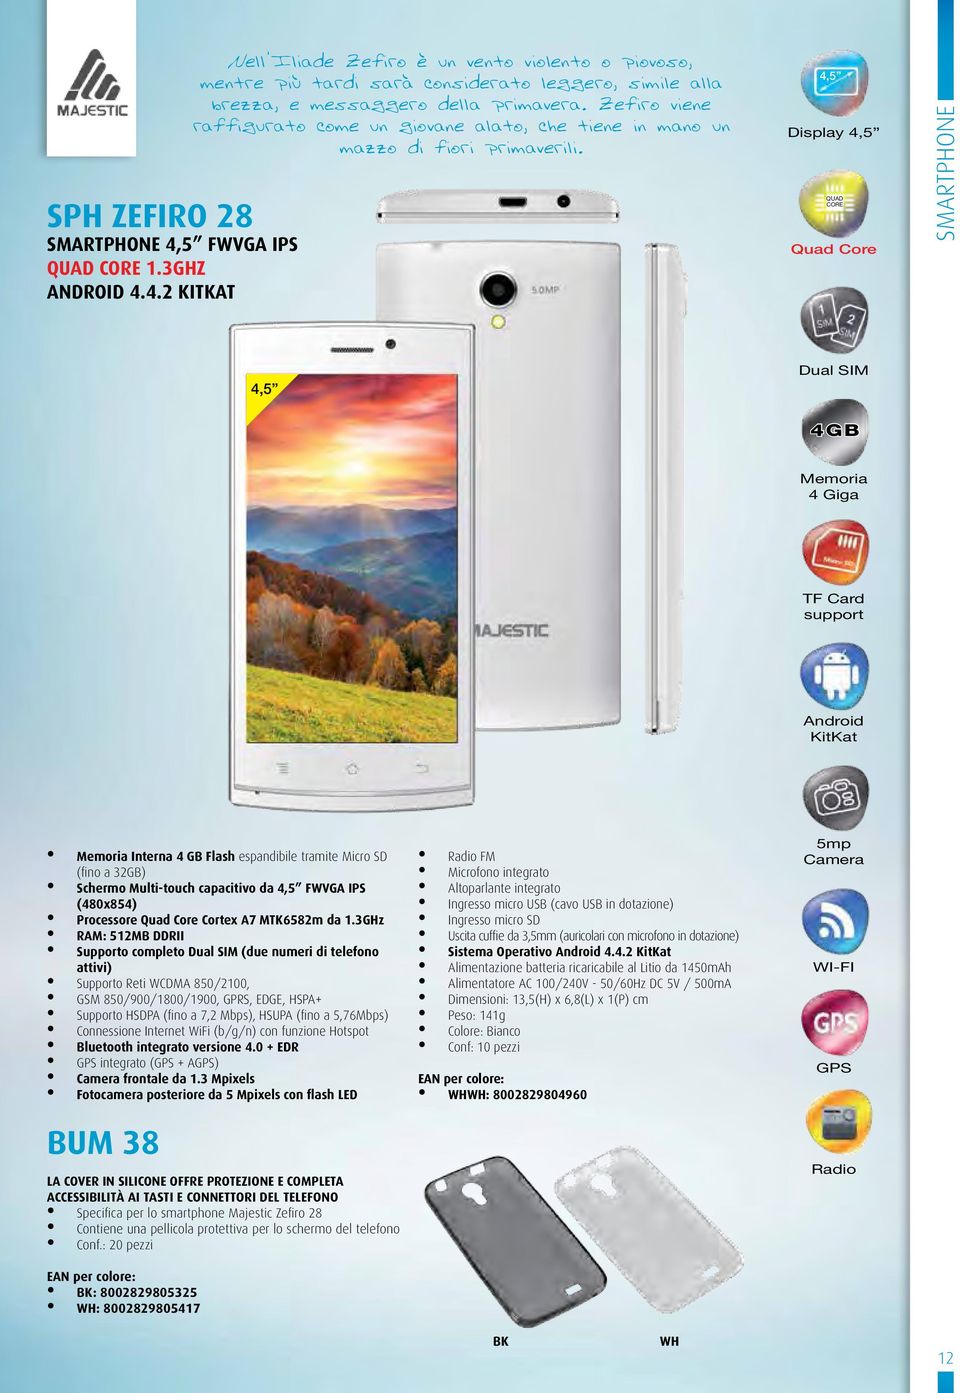 4,5 Display 4,5 QUAD Quad smartphone 4,5 SIM 4GB 4 Giga TF Card support KitKat Interna 4 GB Flash espandibile tramite Micro SD (fino a 32GB) Schermo Multi-touch capacitivo da 4,5 FWVGA IPS (480x854)